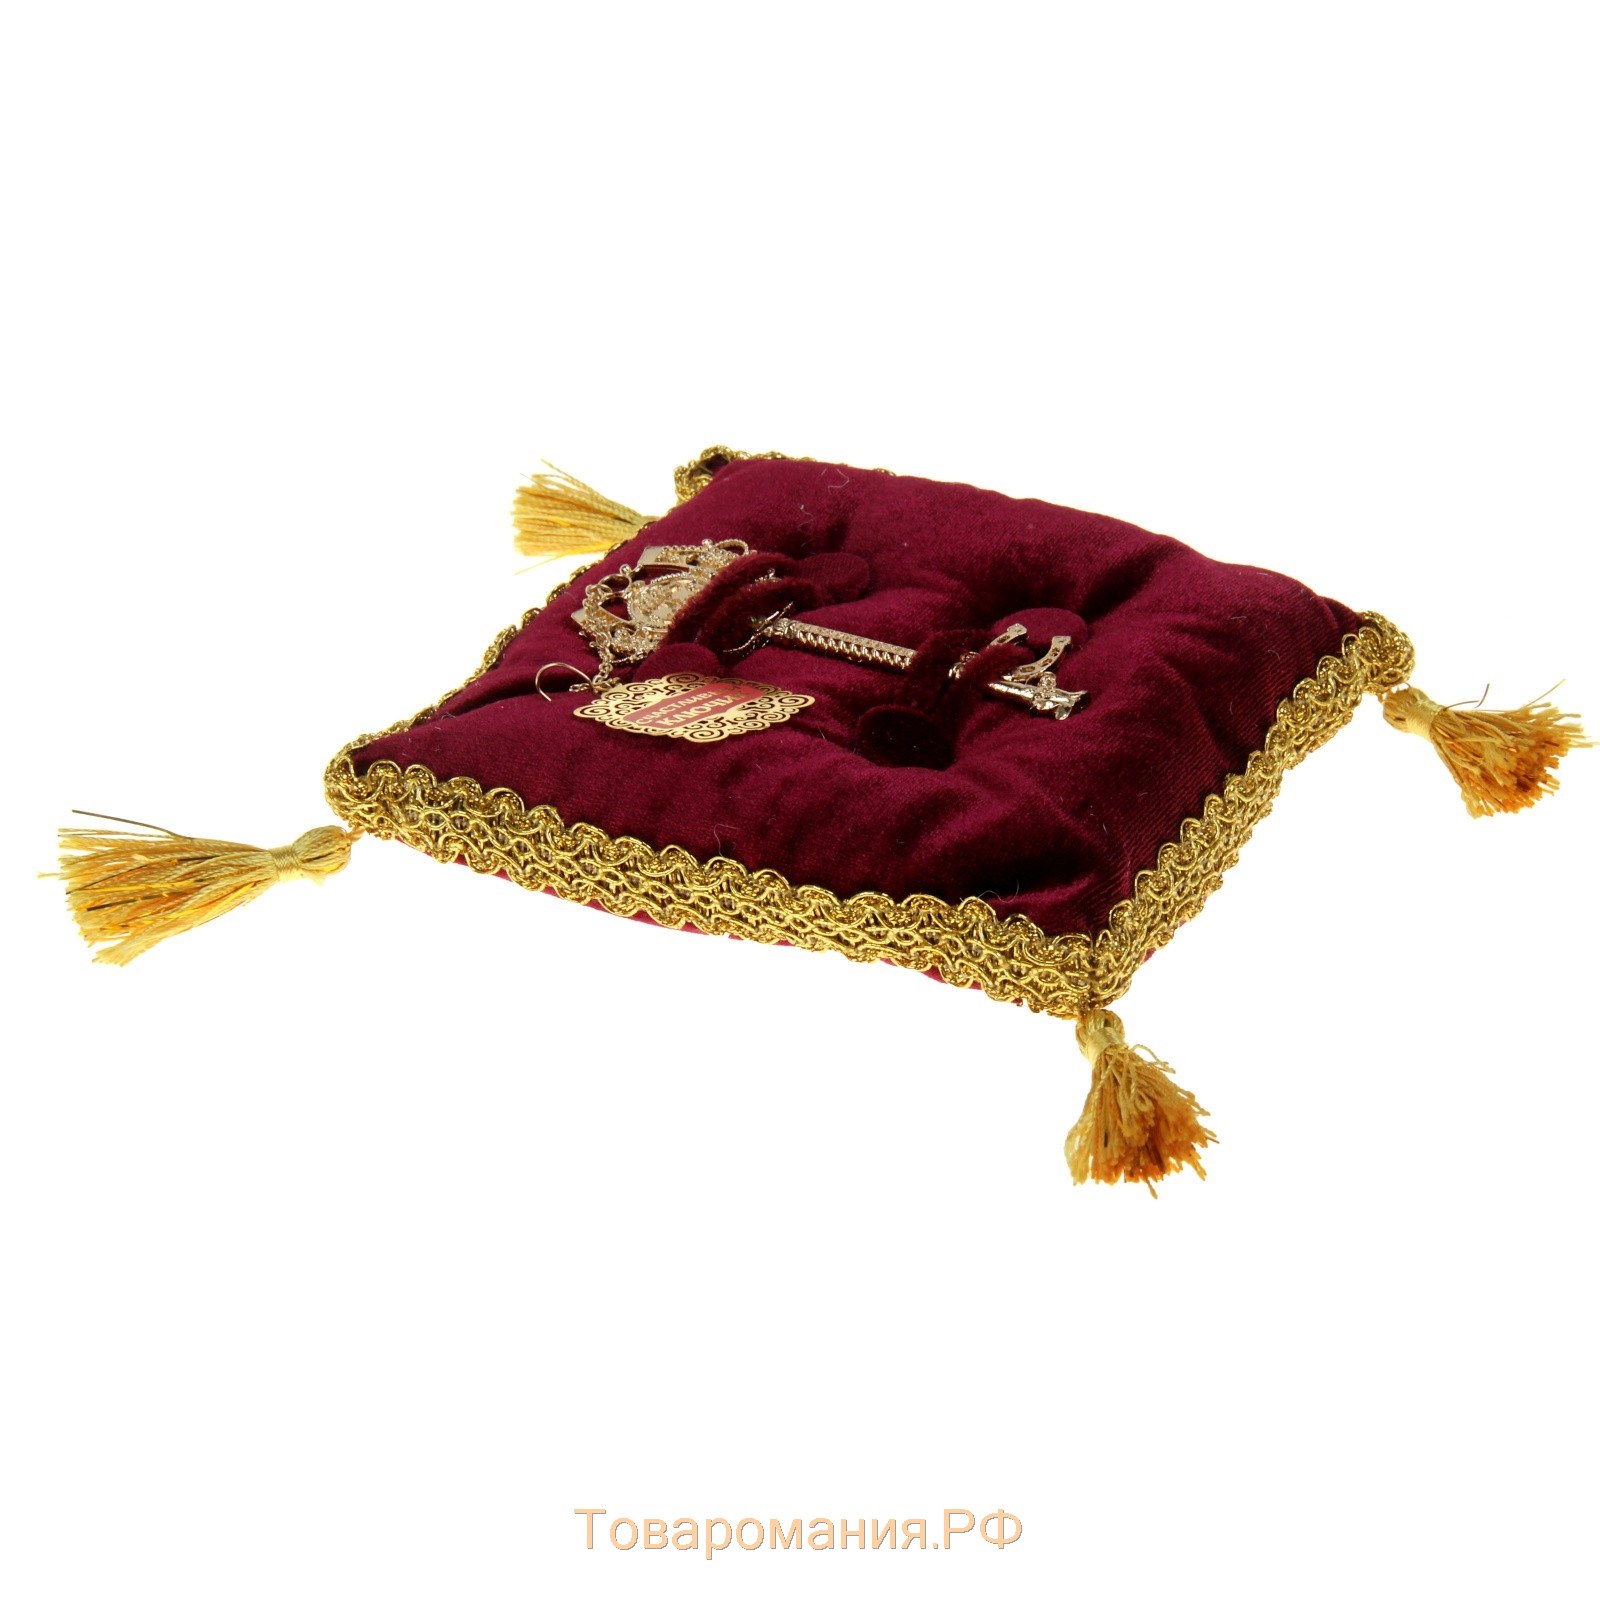 Золотой ключик сувенирный на подушке "К удаче"